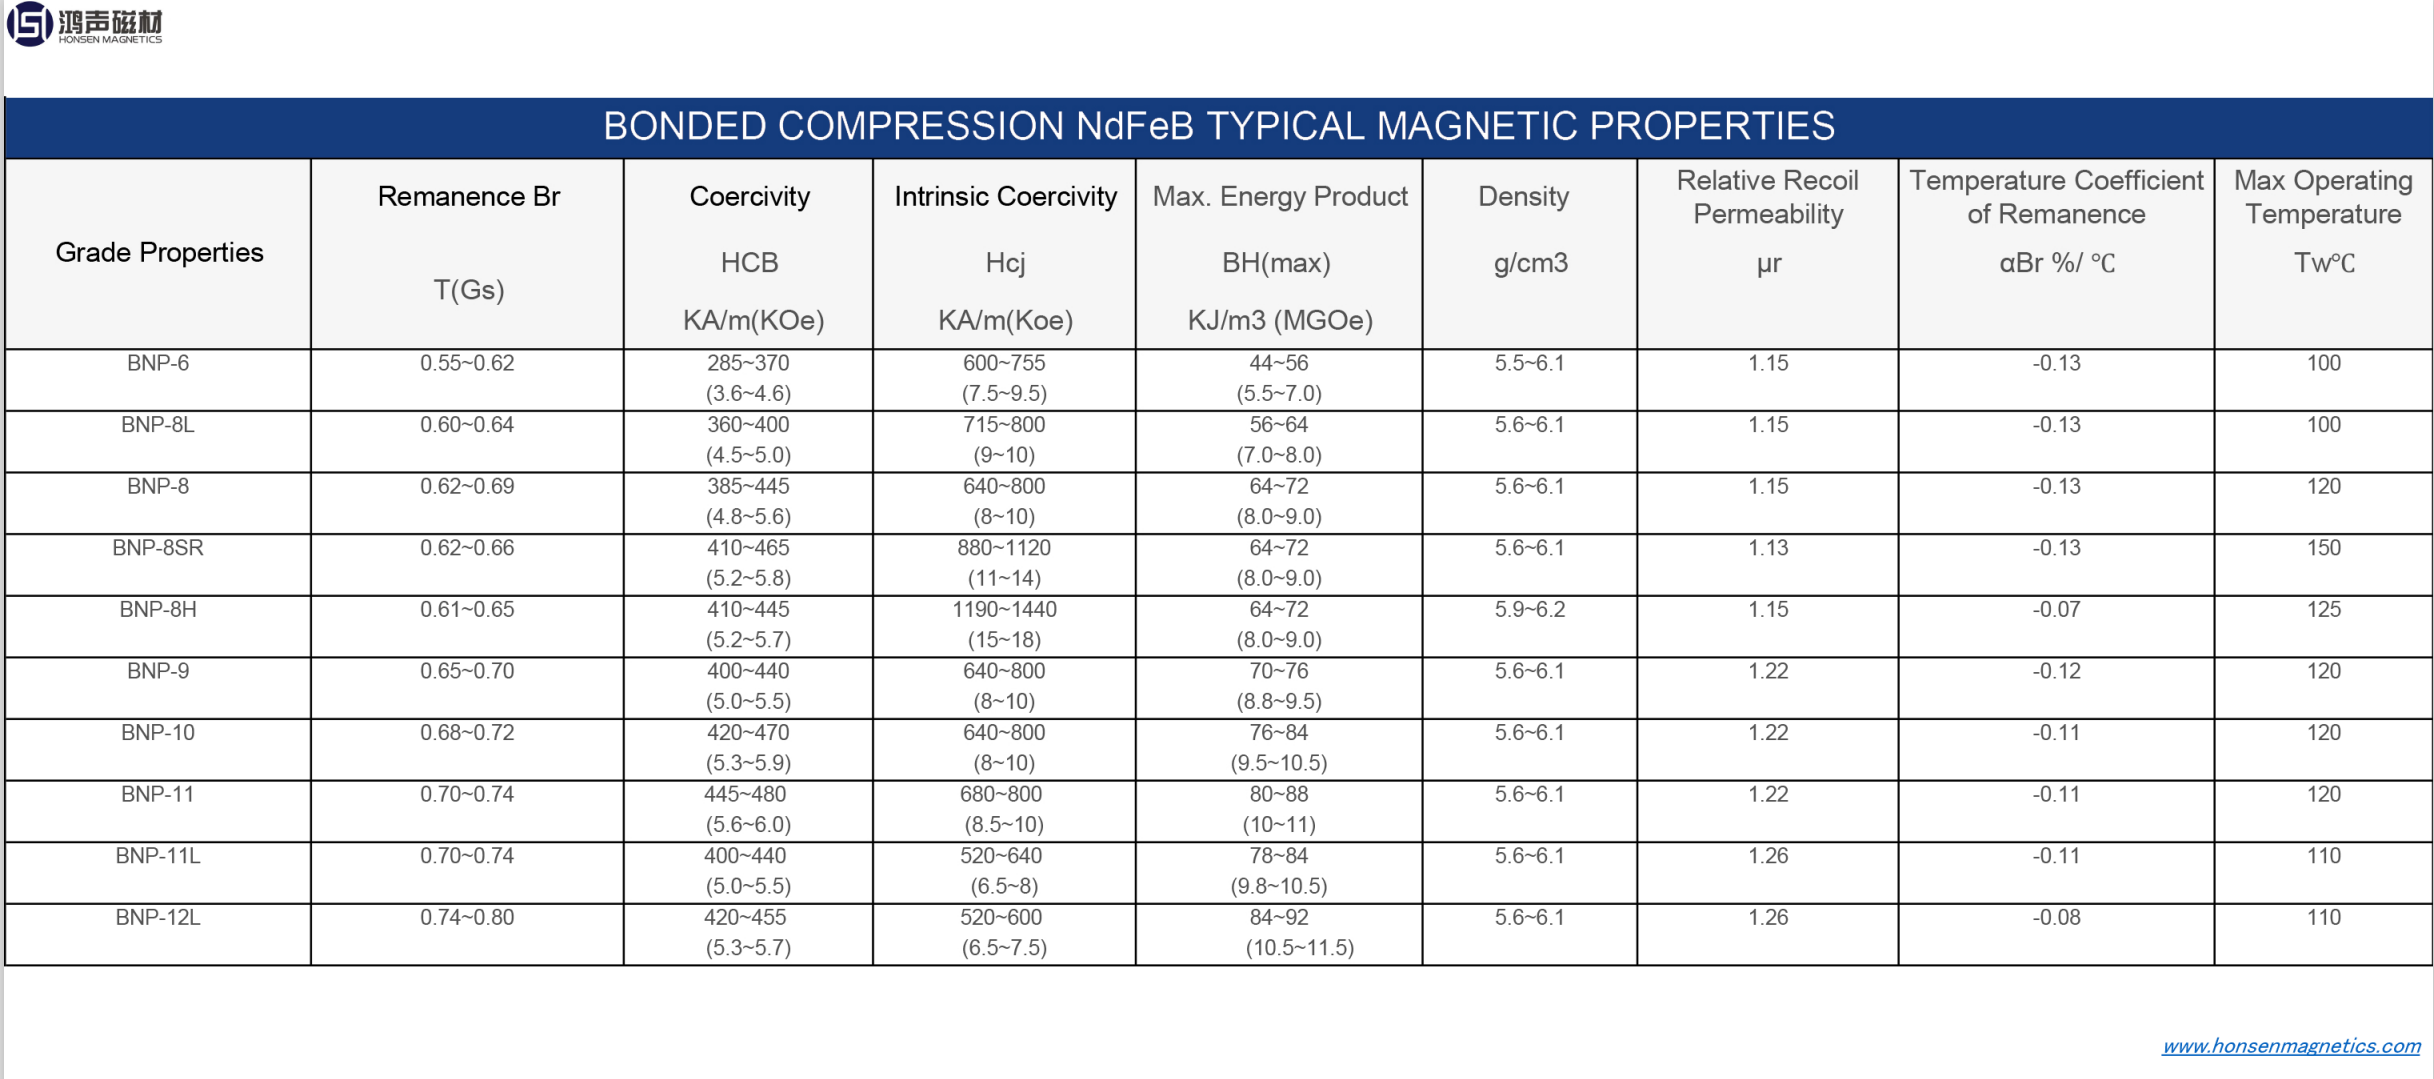 Bonded Compression NdFeB Typiske Magnetiske Egenskaber